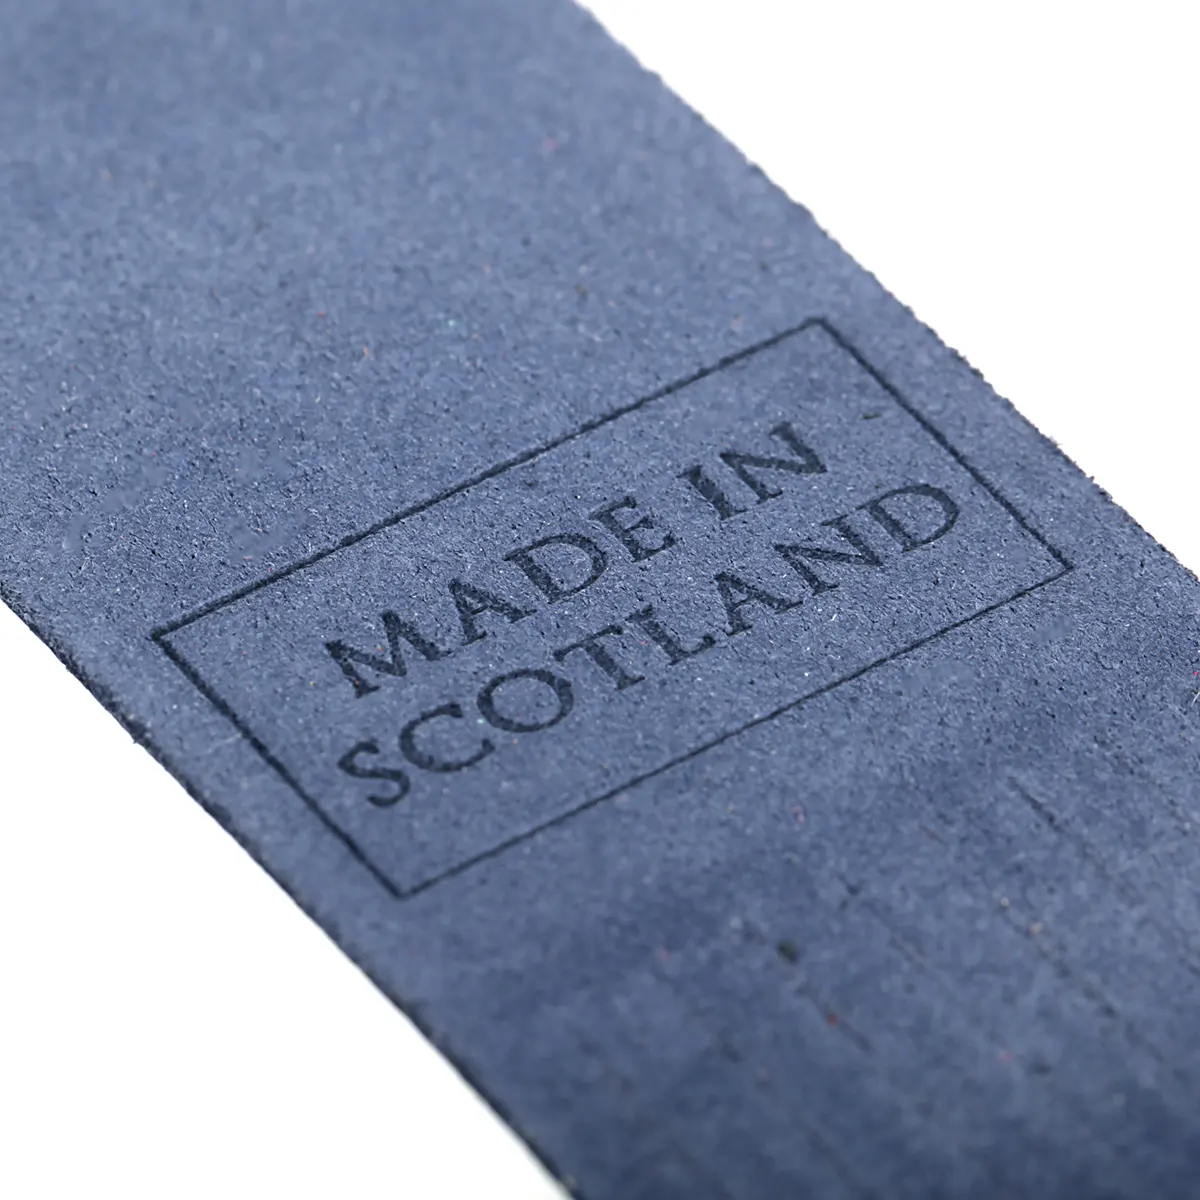 Inverness - Lesezeichen aus Leder in Blau - Made in Scotland